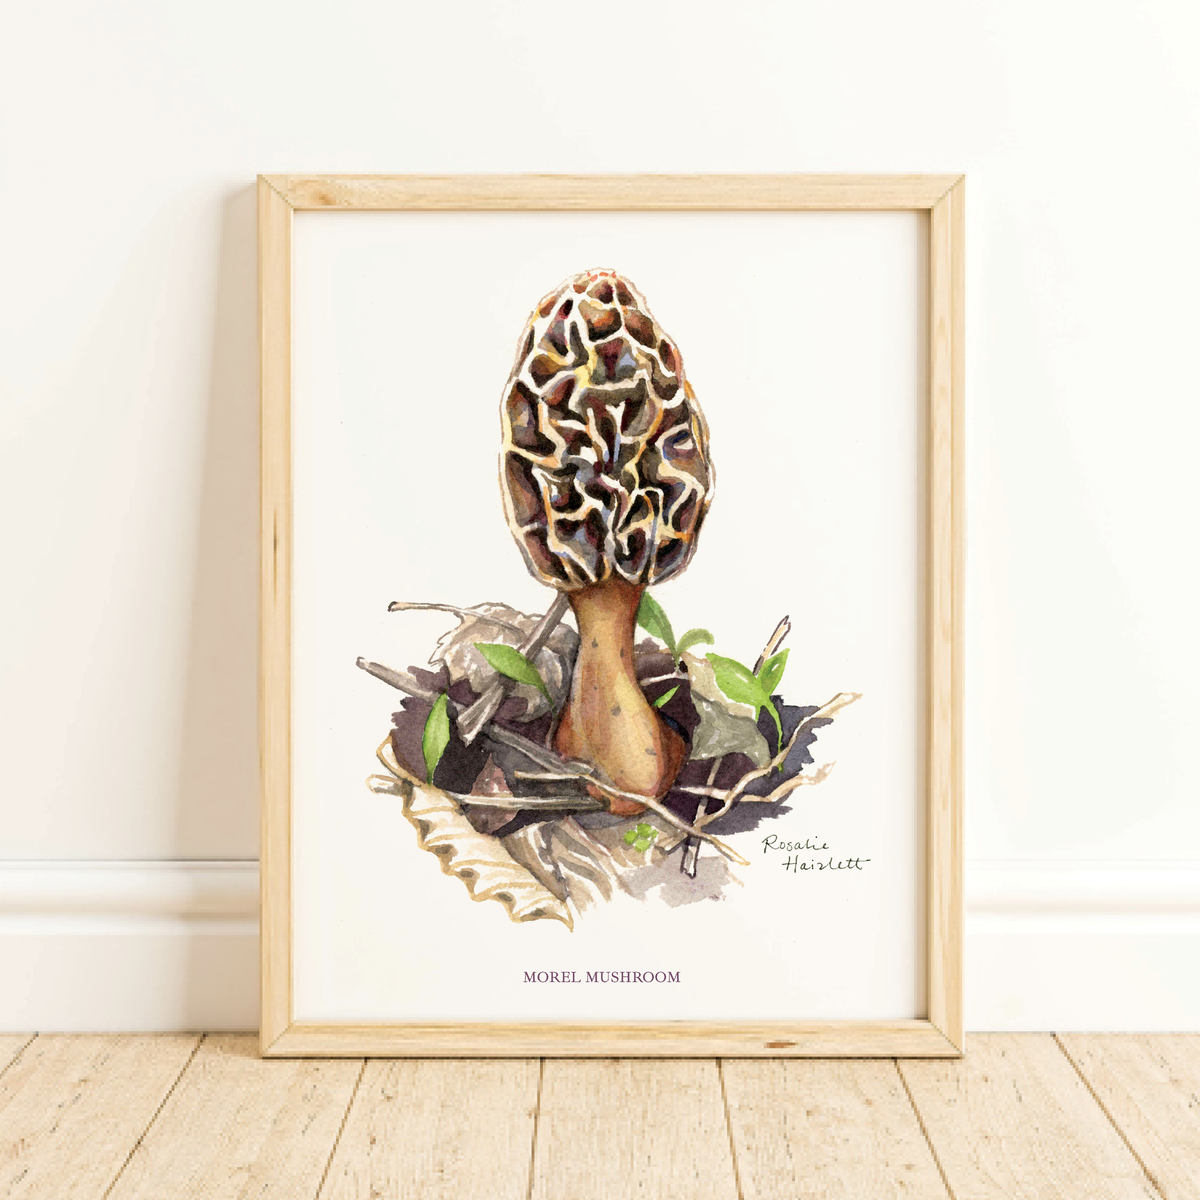 Morel Mushroom Watercolor Art Print